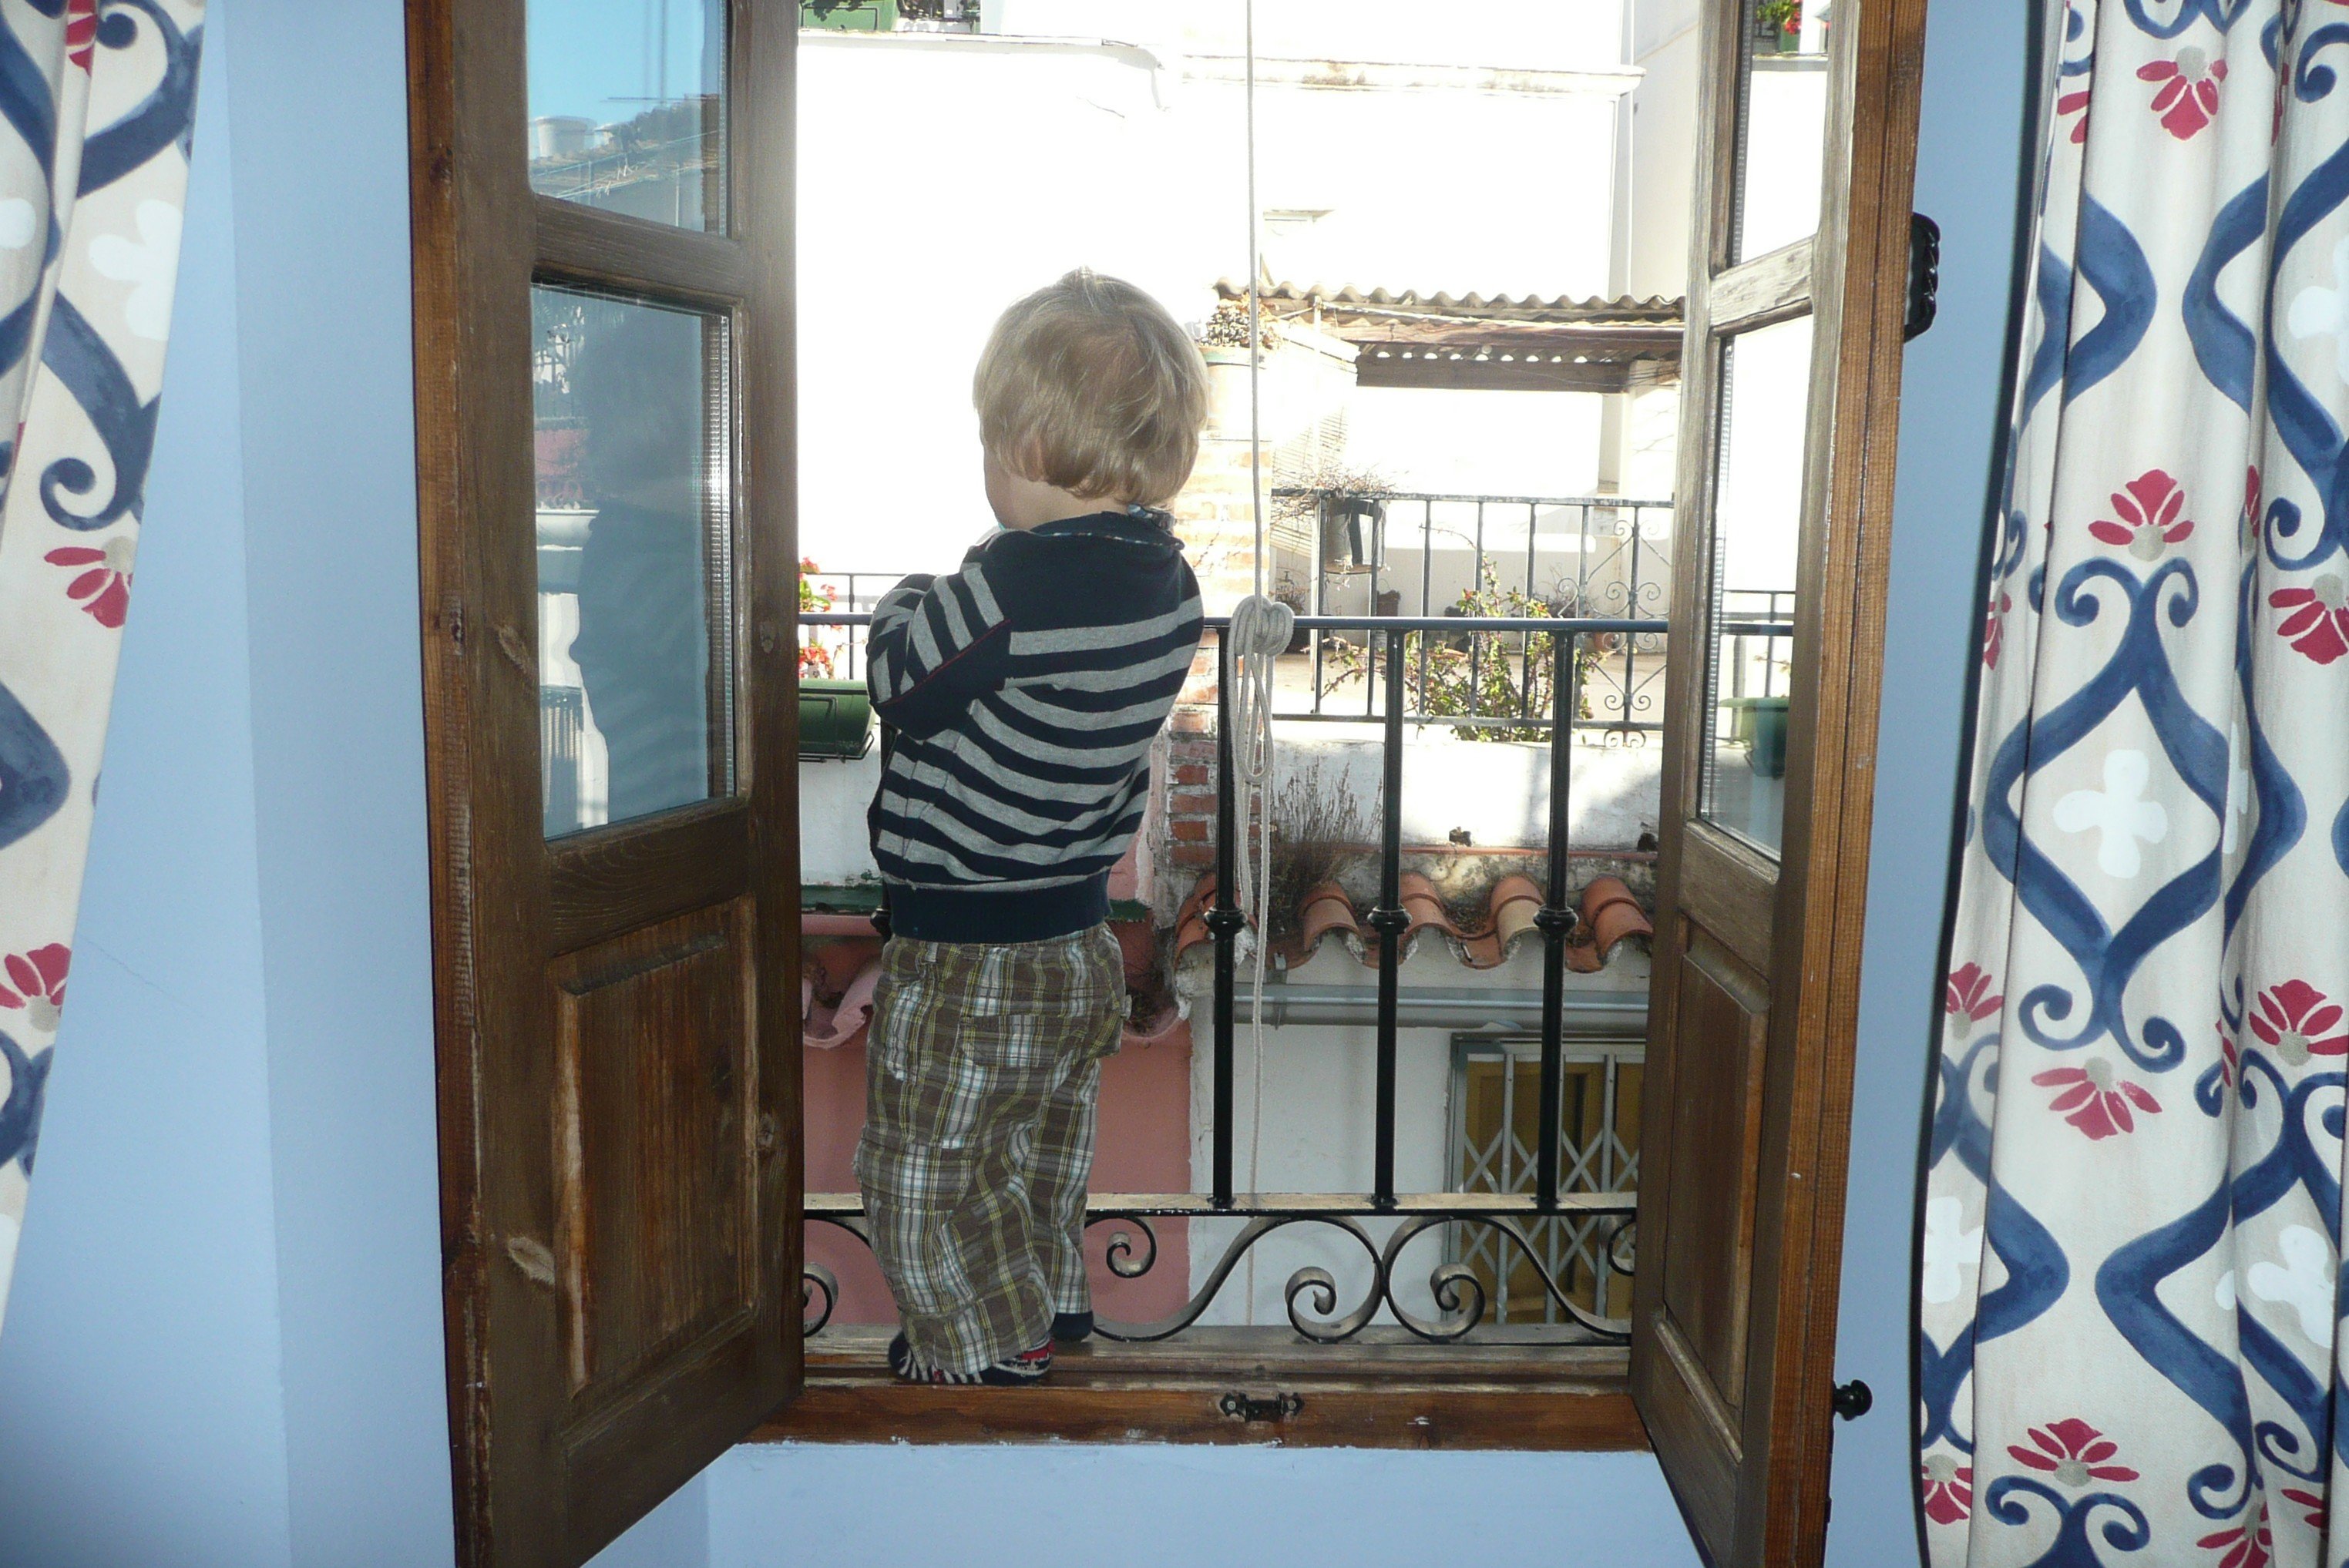 Kind an Balkonbrüstung: Ist der Balkon kindersicher? © KidsAway